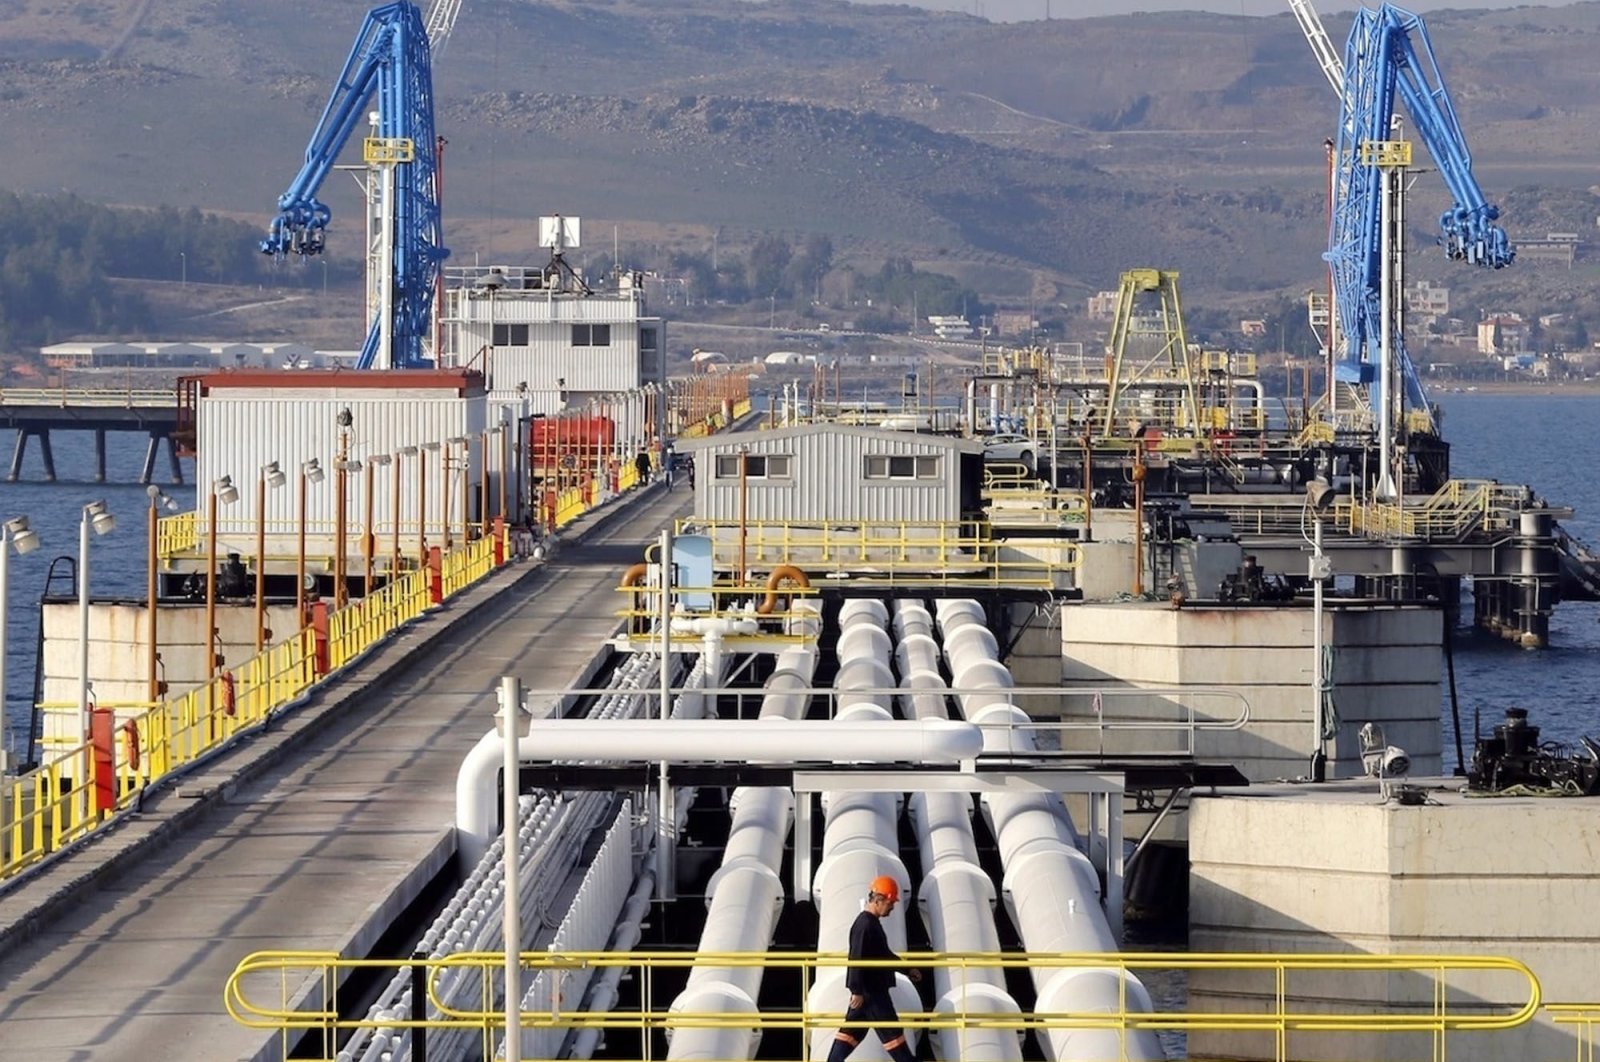 Türkiye untuk memasok LNG dari terminalnya ke Bulgaria: Menteri